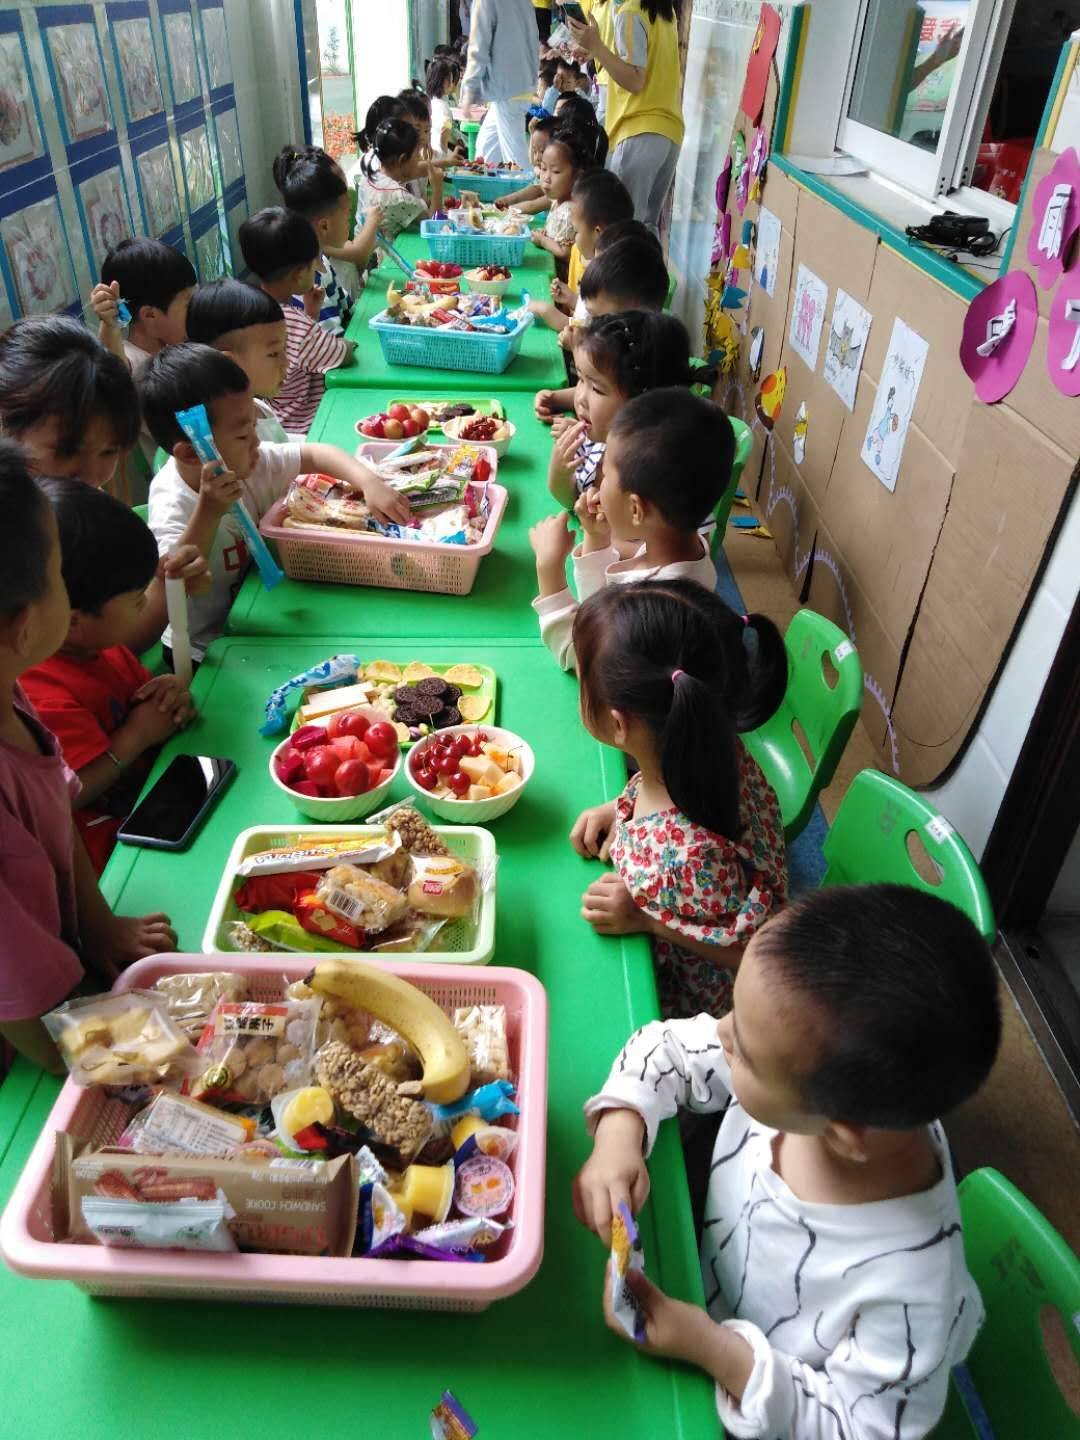 双塘镇中心幼儿园—— 舌尖上的童年，共度美好“食”光活动报道_校园之窗_新沂教育